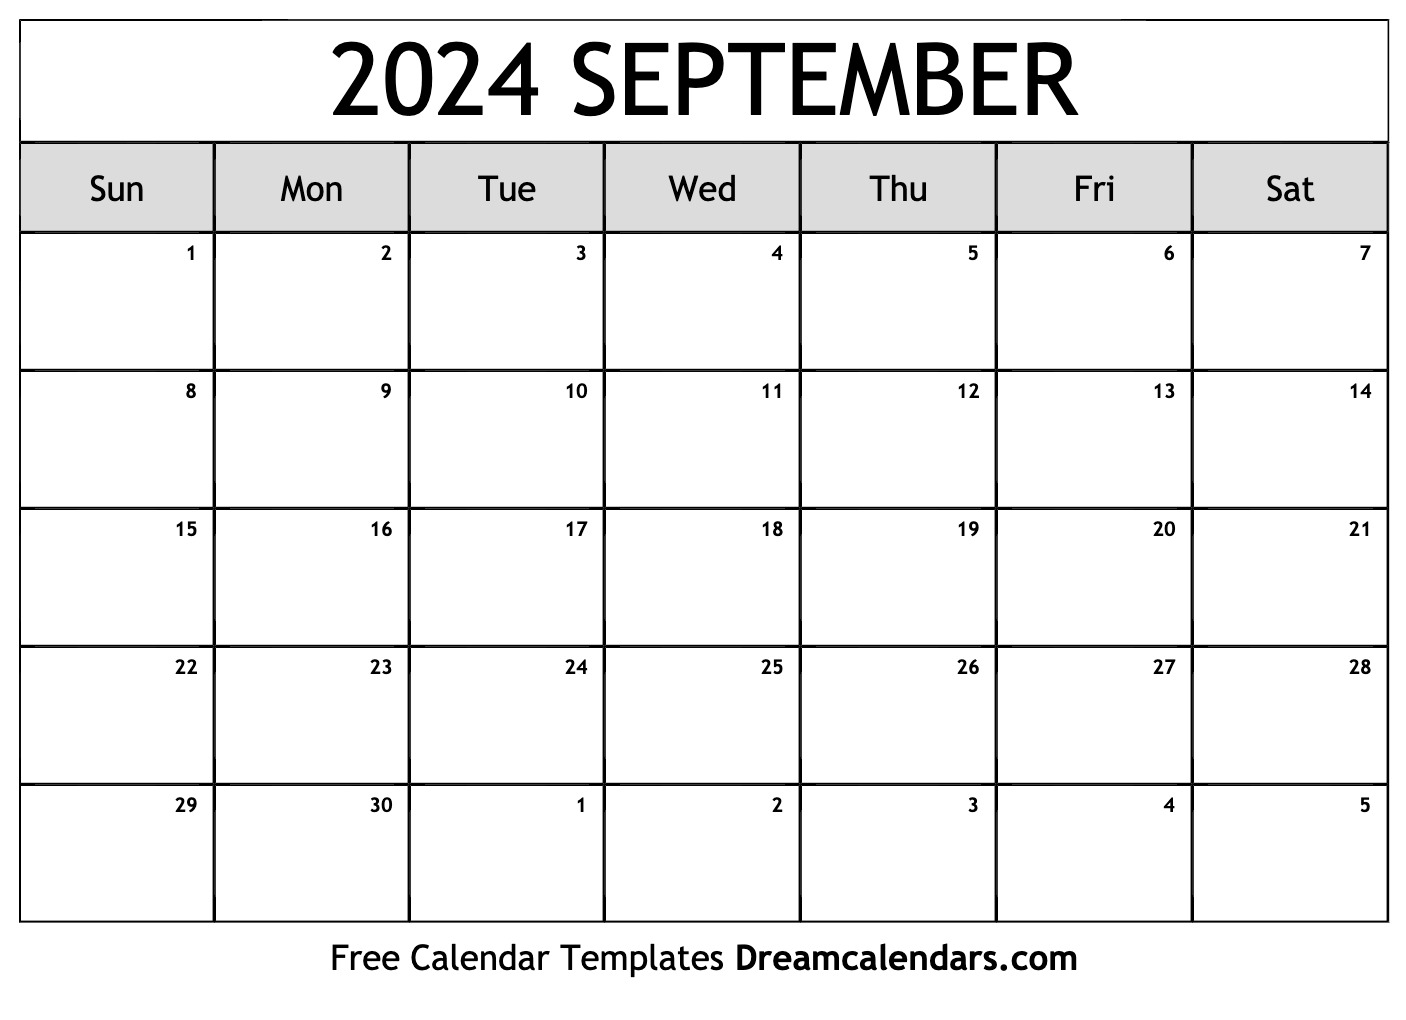 Calendar September 2024 Image Easy to Use Calendar App 2024